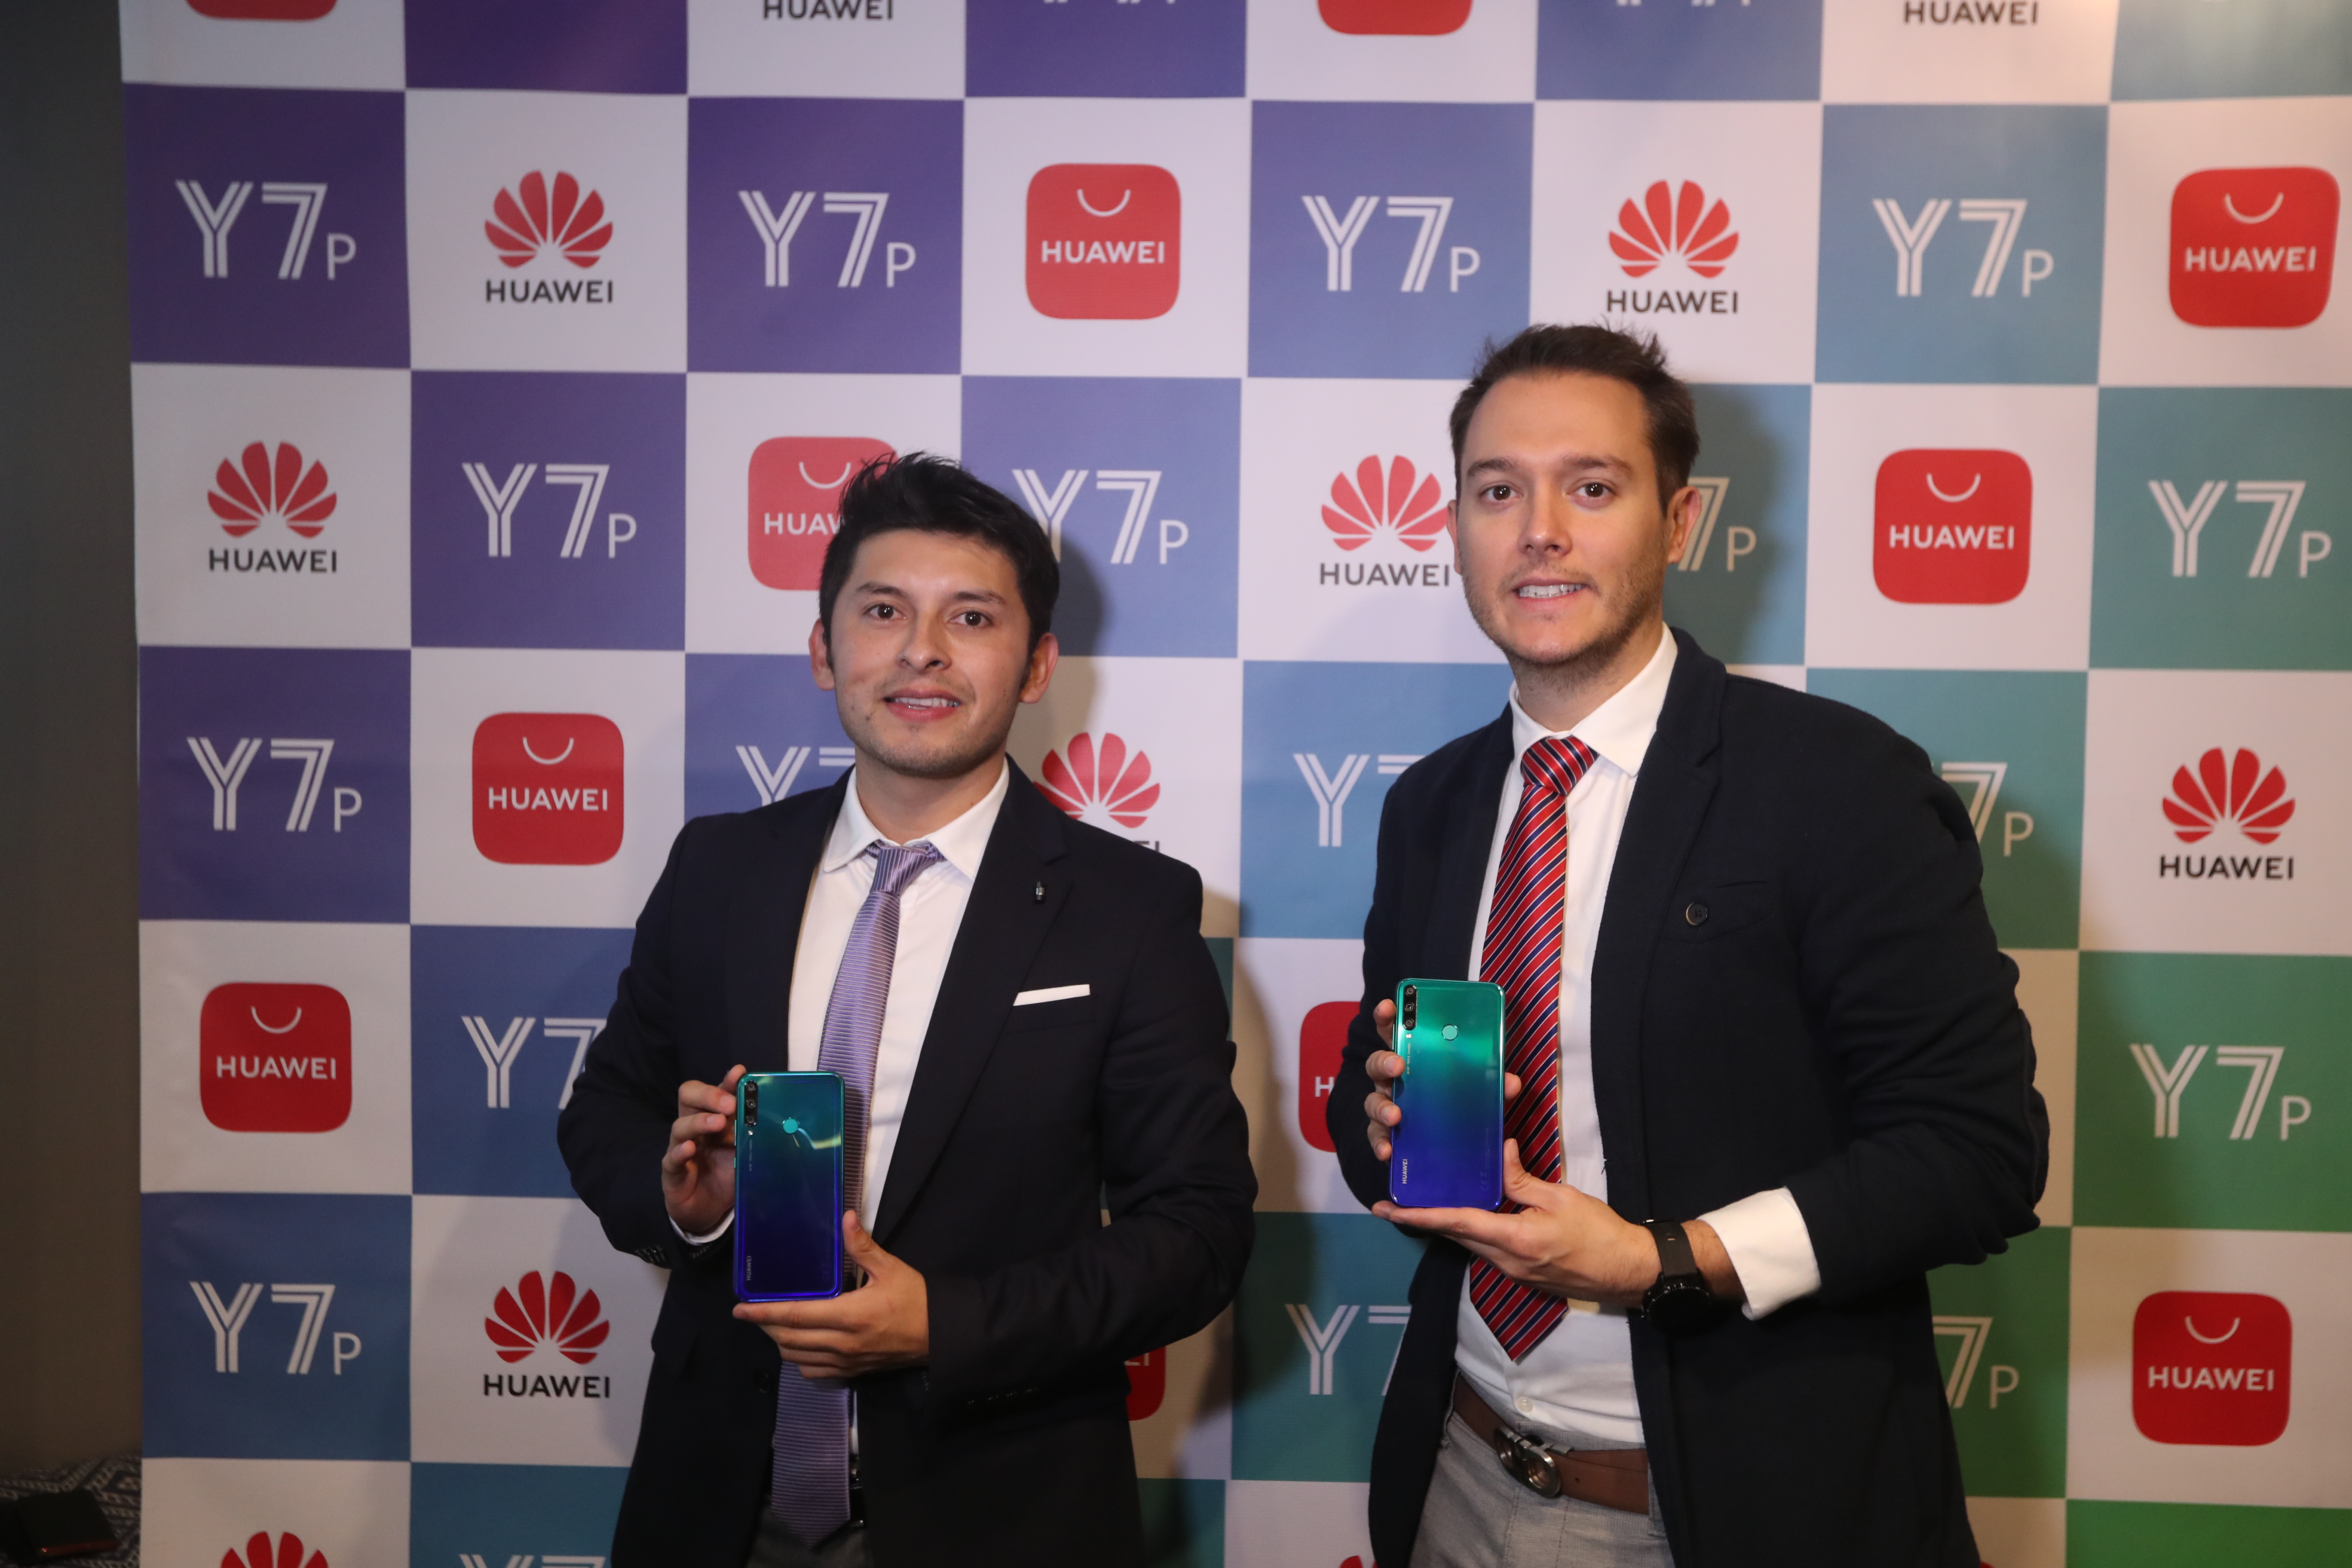 Representantes de Huawei Guatemala presentaron el nuevo Y7p. Foto Prensa Libre: Norvin Mendoza